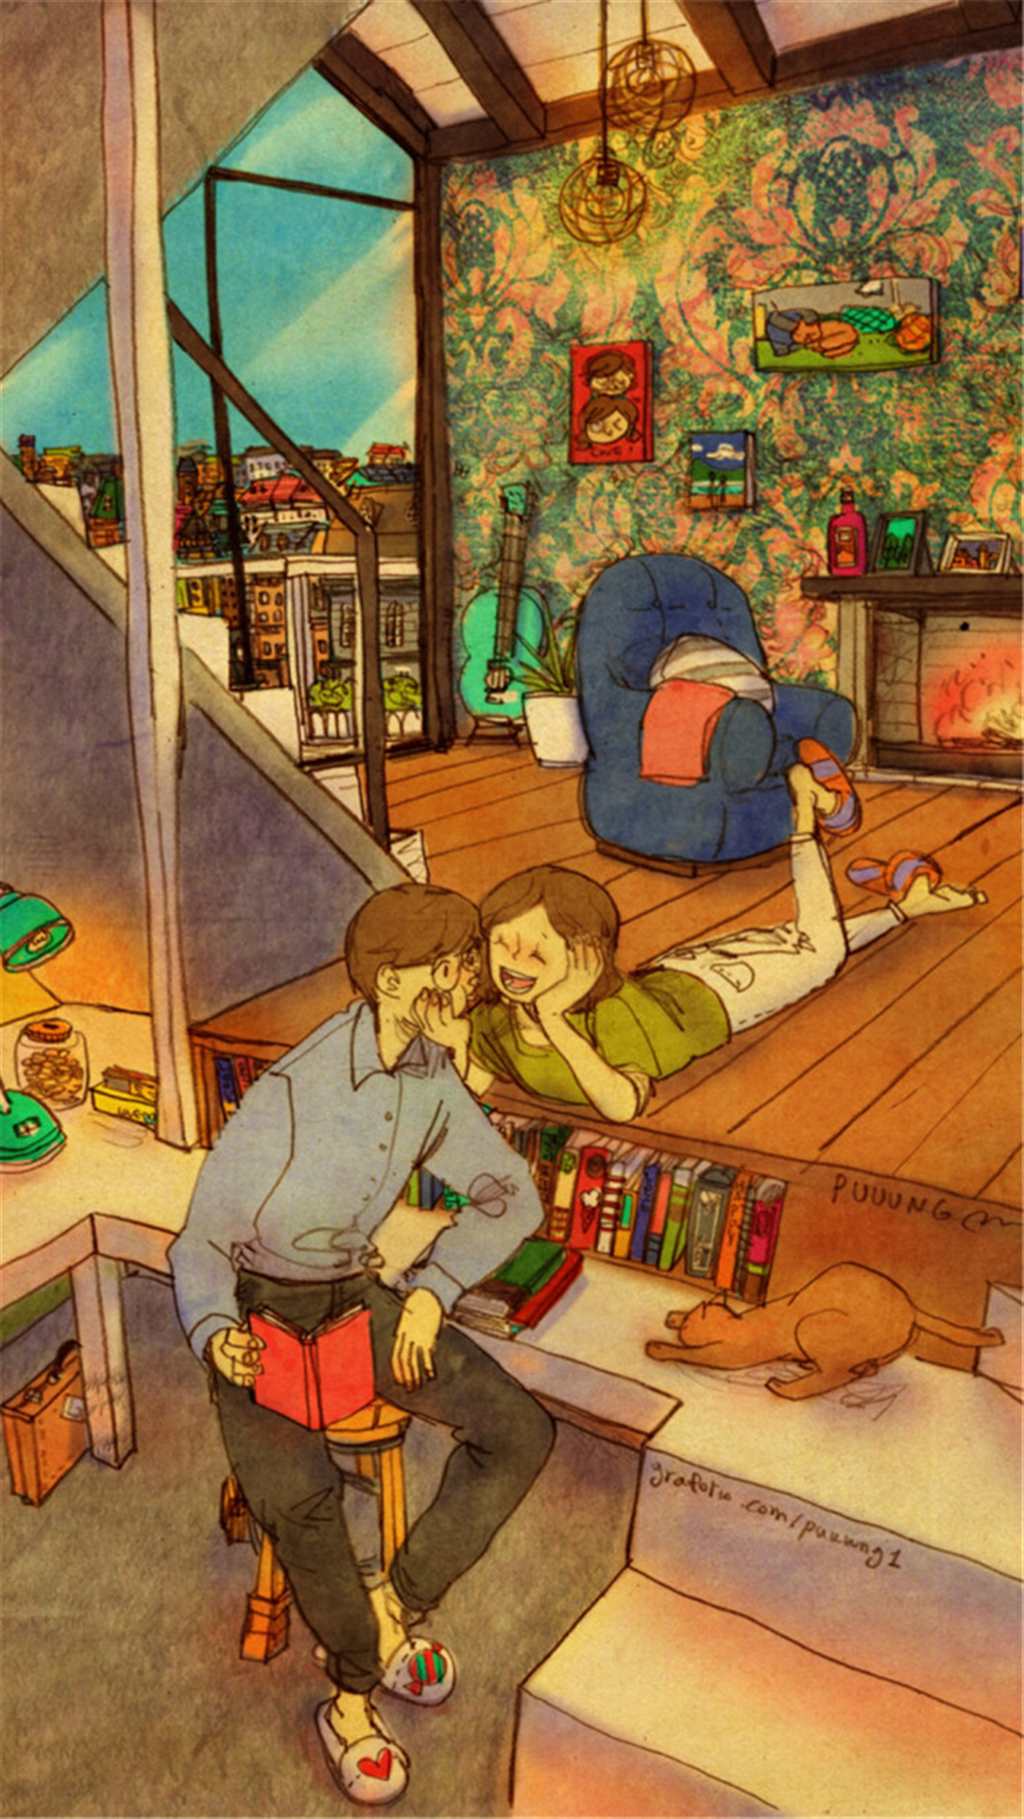 韩国插画师puuung的暖心爱情故事插画 壁纸